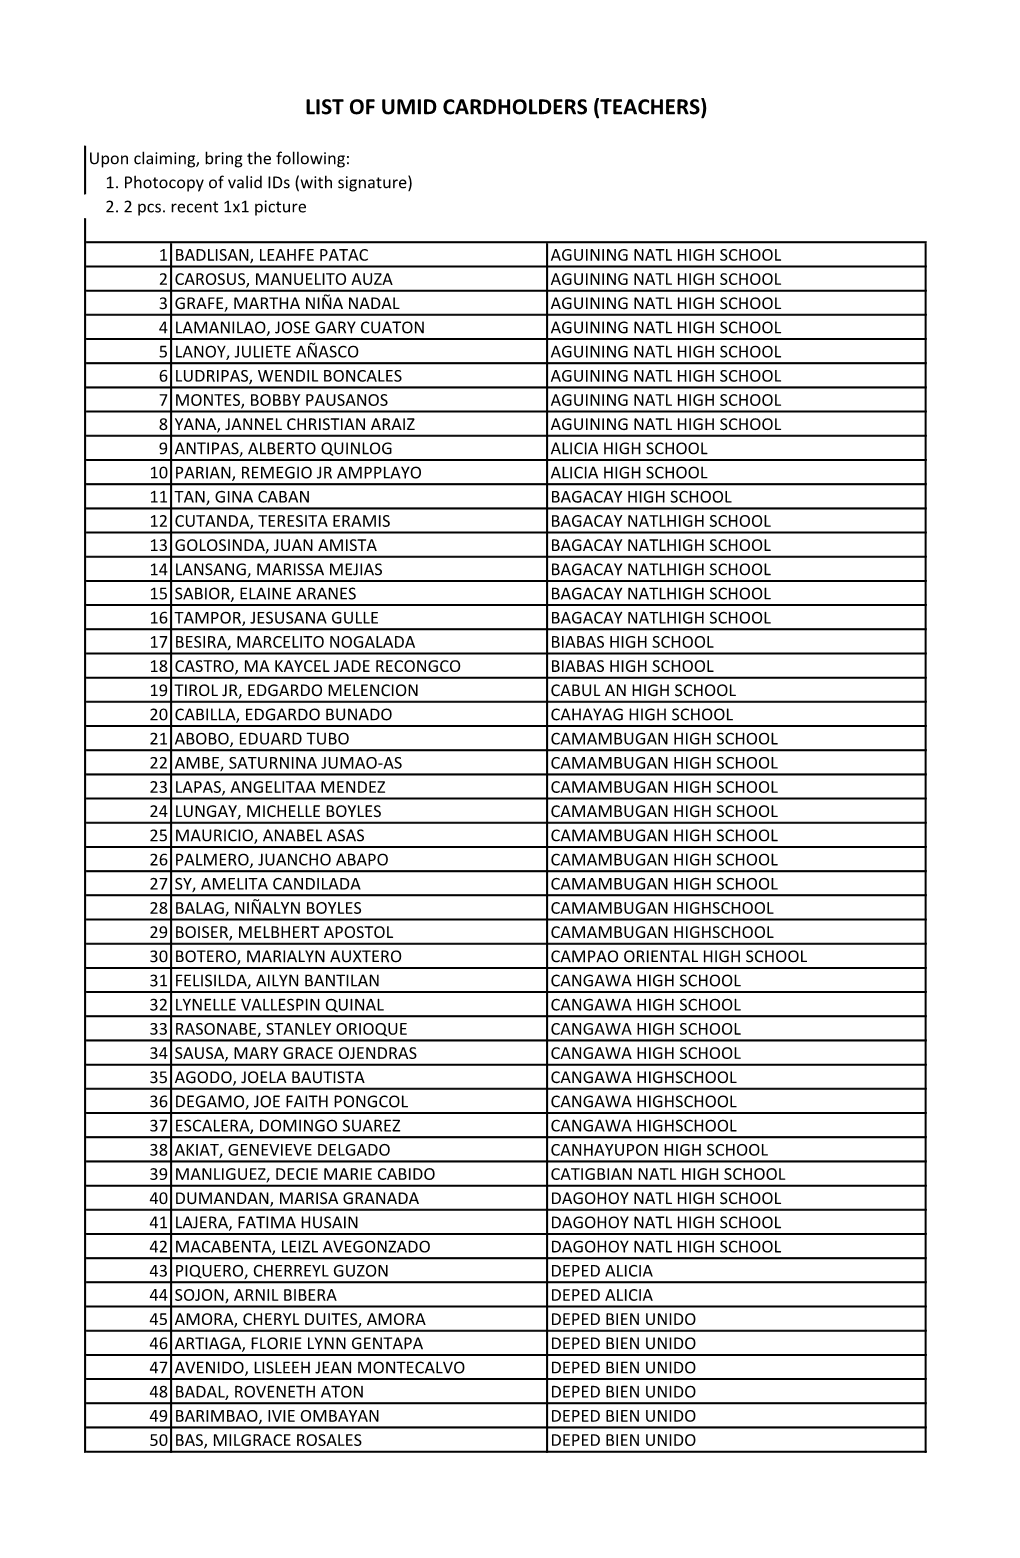 List of Umid Cardholders (Teachers)